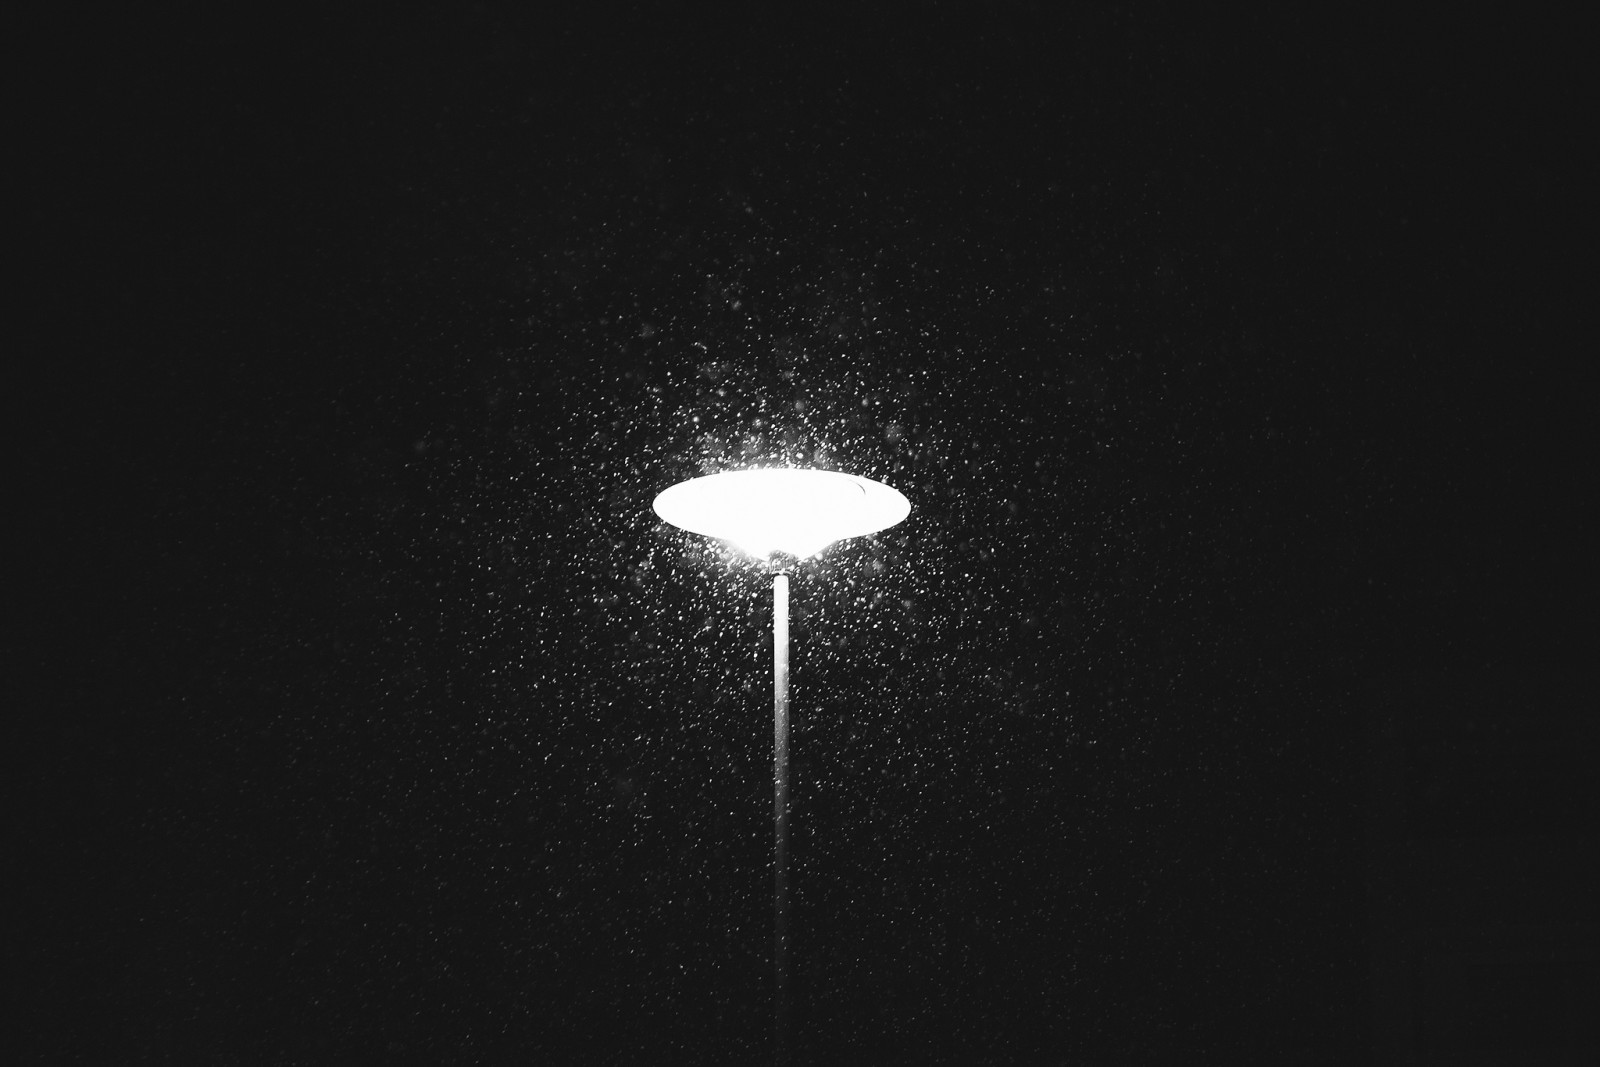 cahaya, musim dingin, turun salju, tiang lampu di jalan